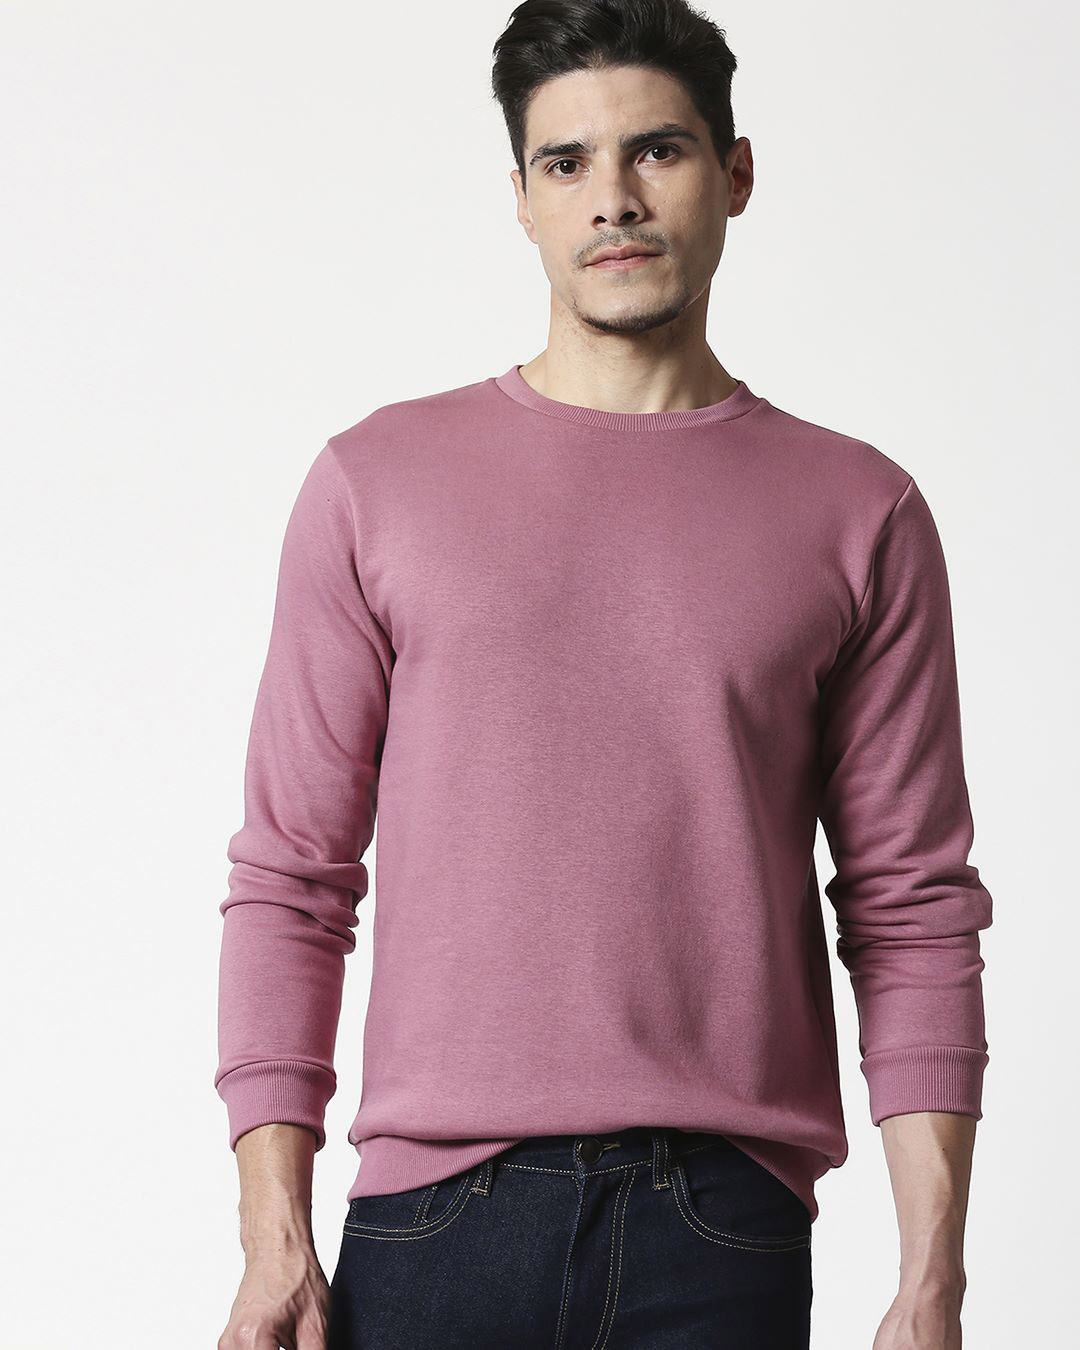 Buy Frosty Pink Fleece Sweatshirt for Men Online at Bewakoof